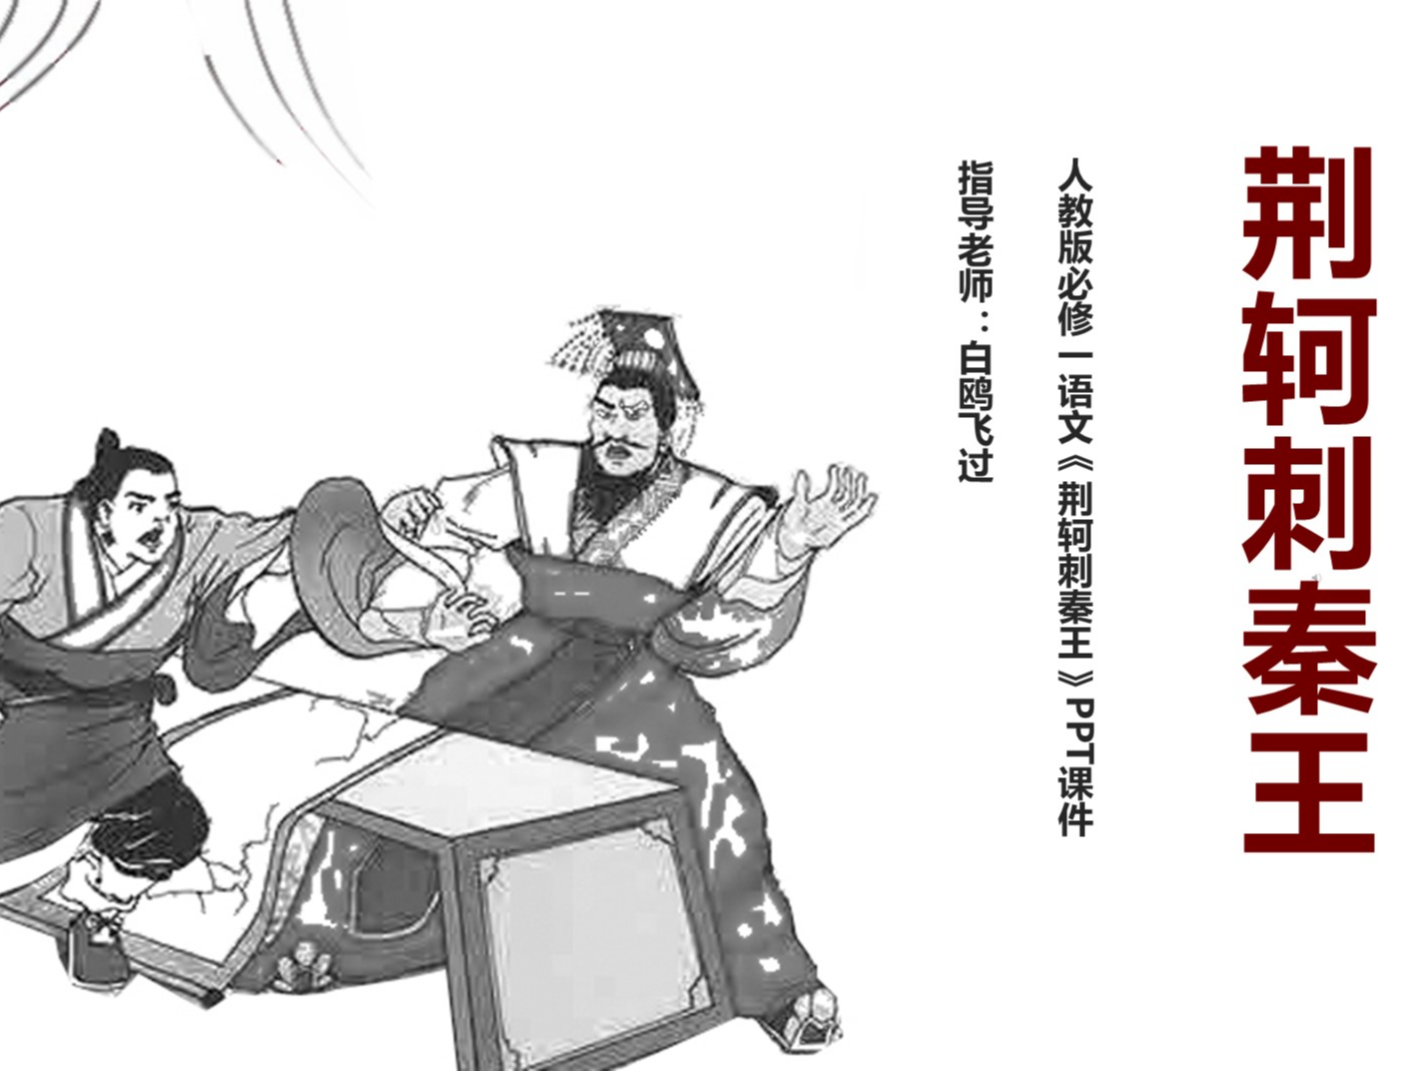 场景设计在故事绘本《荆轲刺秦王》中的设计应用_砍价_人人秀H5_rrx.cn